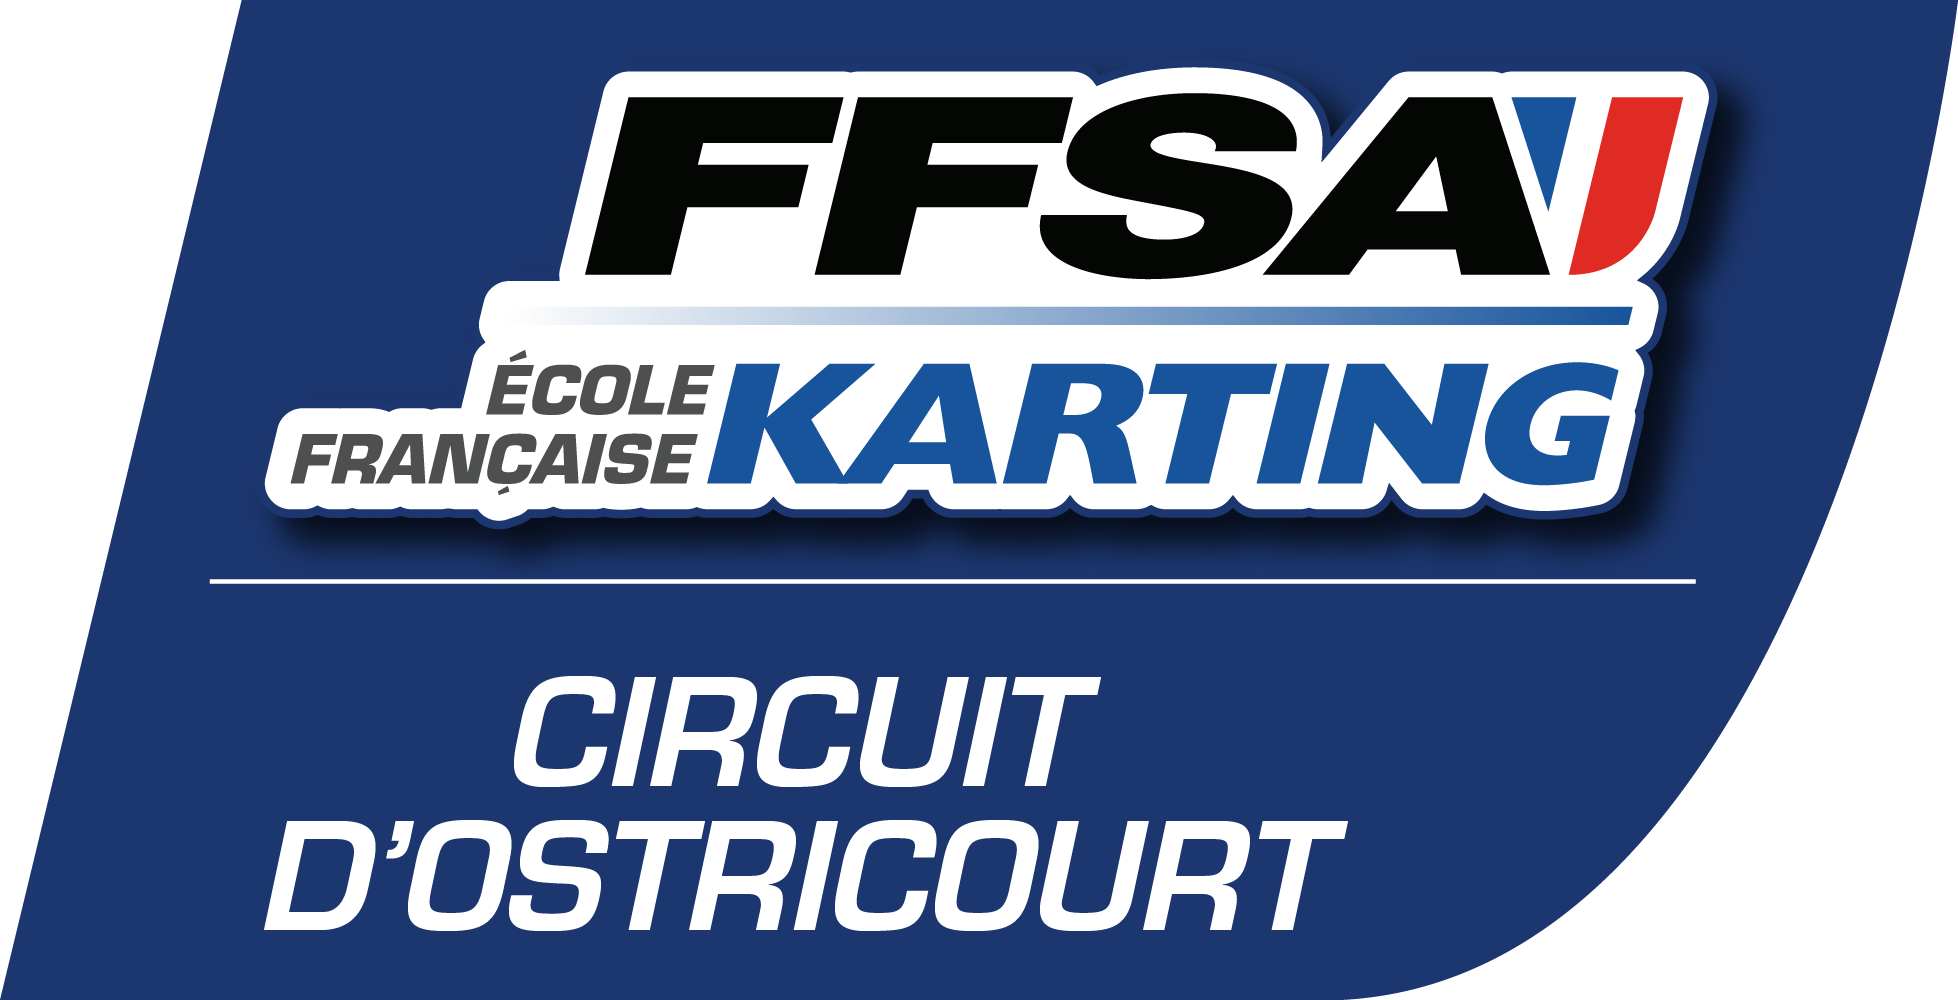 EFK Circuit d'Ostricourt